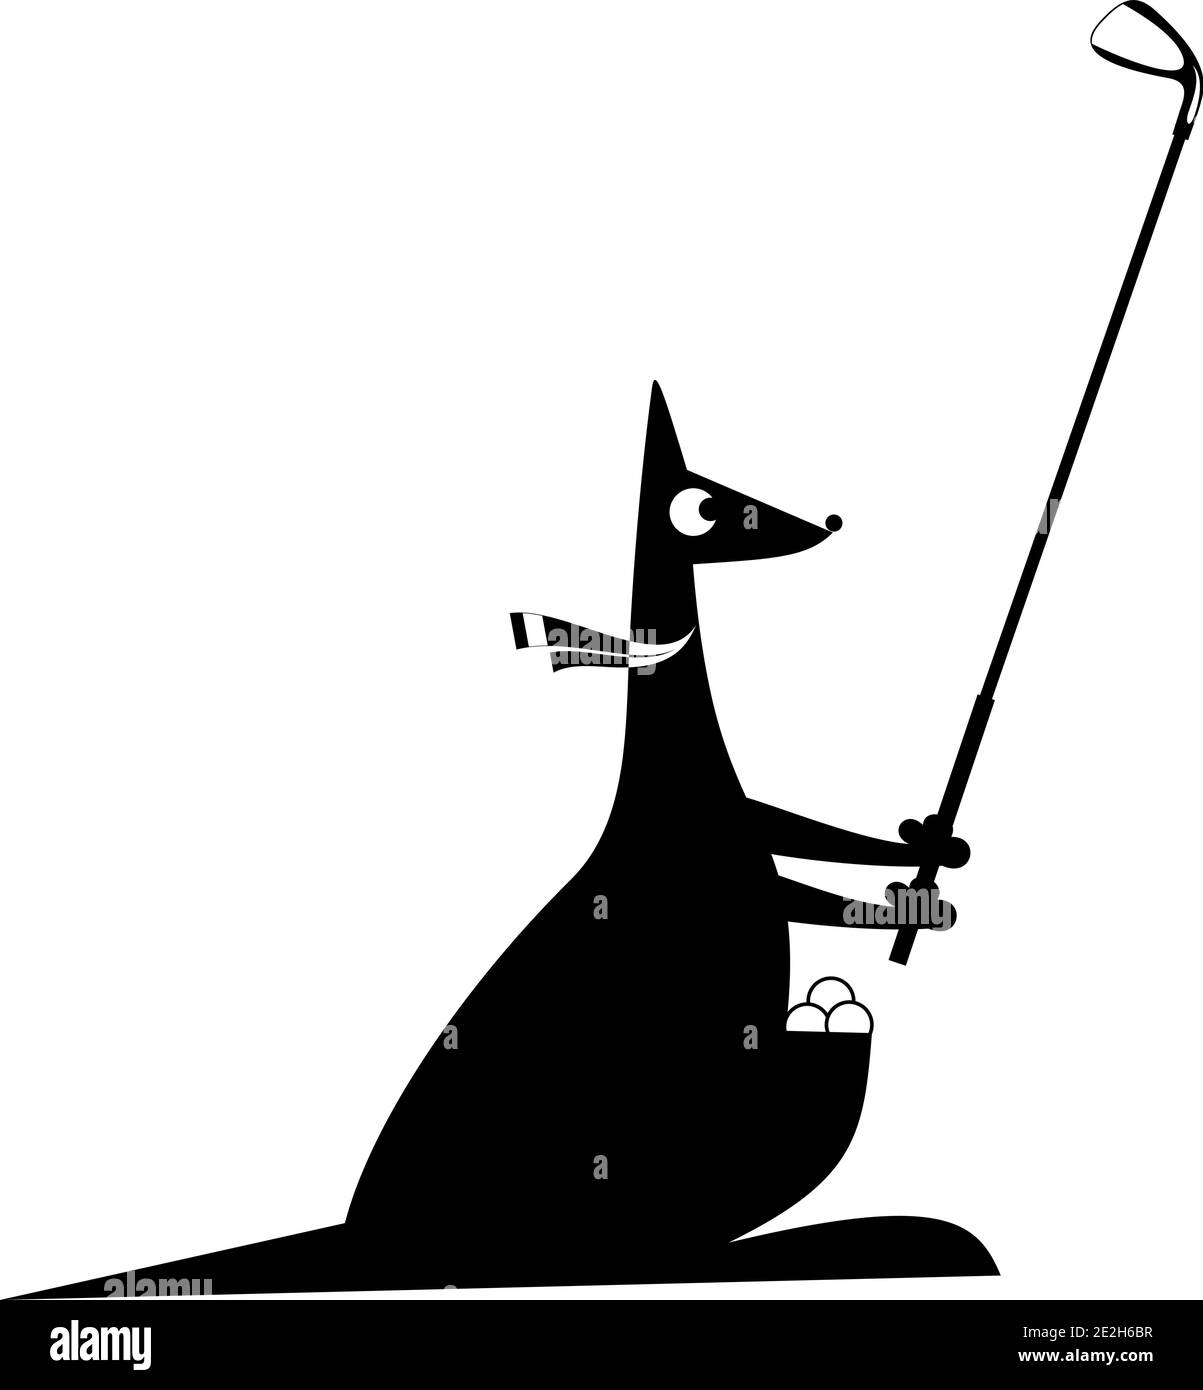 Il canguro del cartone animato gioca l'illustrazione di golf. Divertente canguro con un golf club e palline da golf nero su bianco Illustrazione Vettoriale